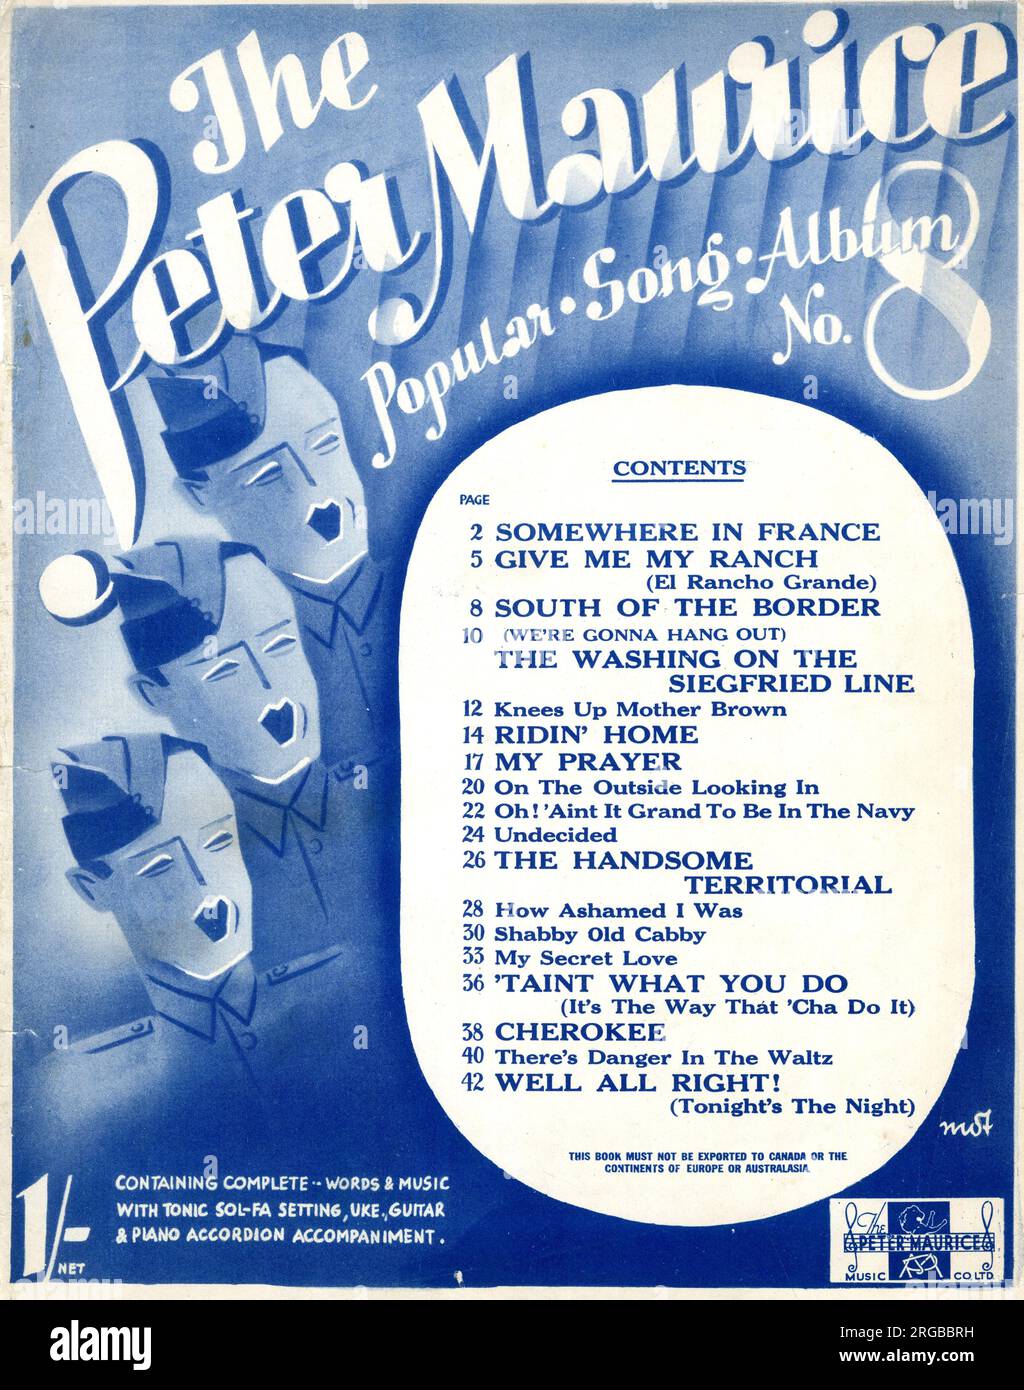 Musikcover, Army Chorus, das Peter Maurice Popular Song Album Nr. 8. Stockfoto